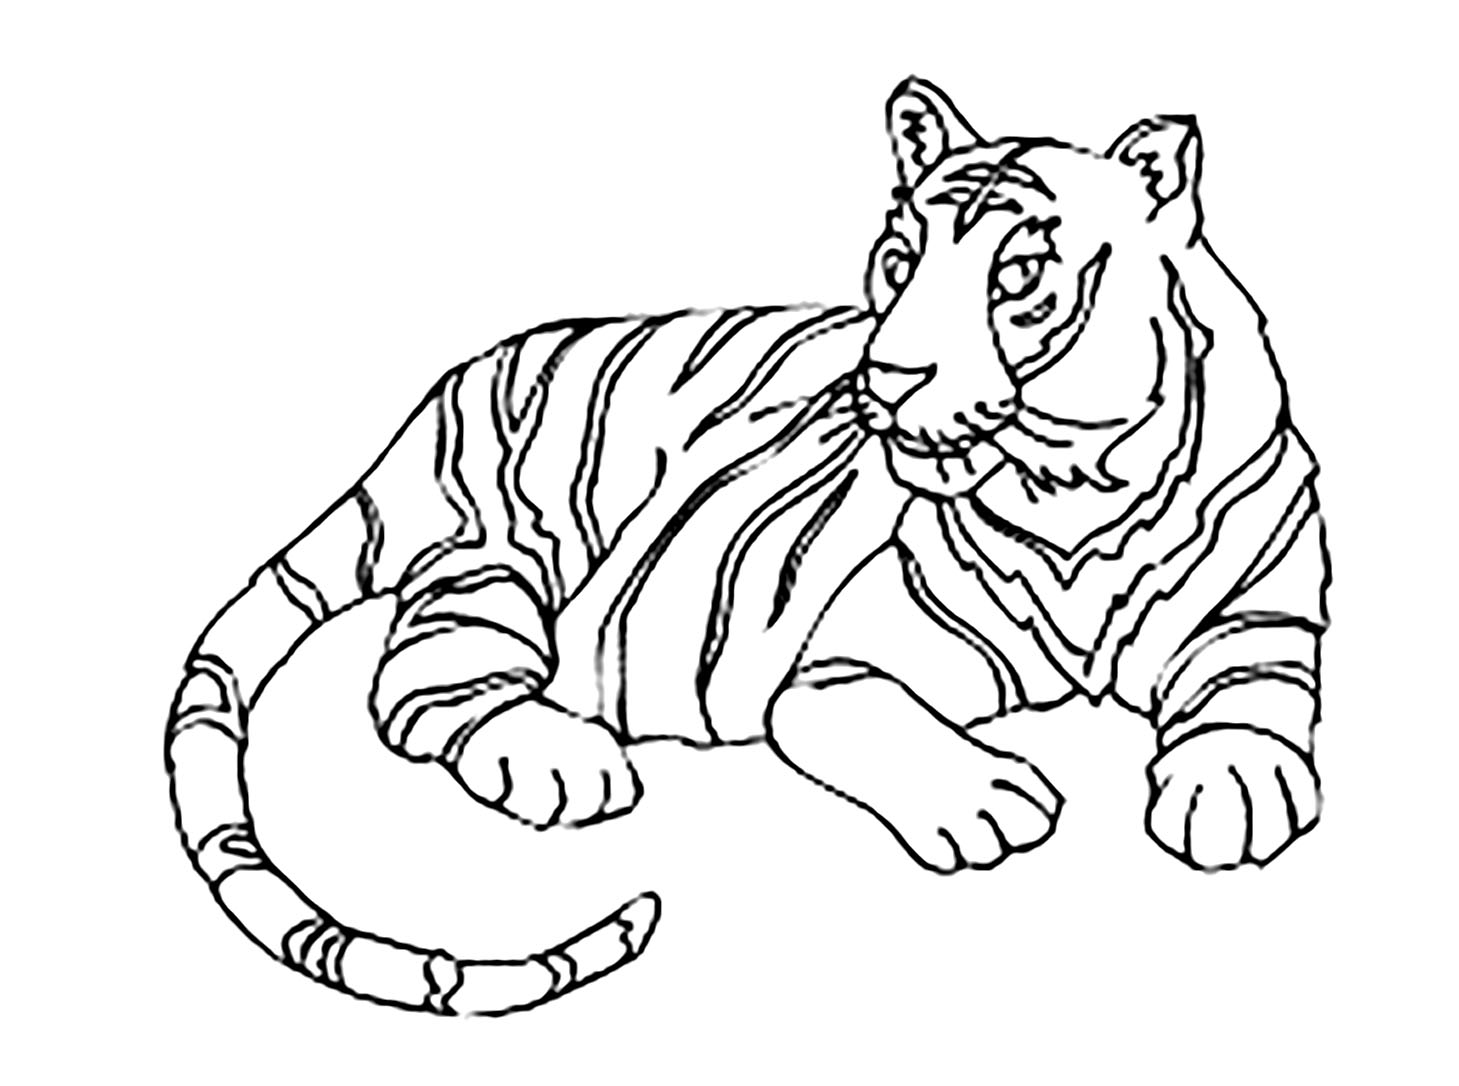 20 Hình vẽ con hổ đơn giản dễ vẽ và đẹp mắt